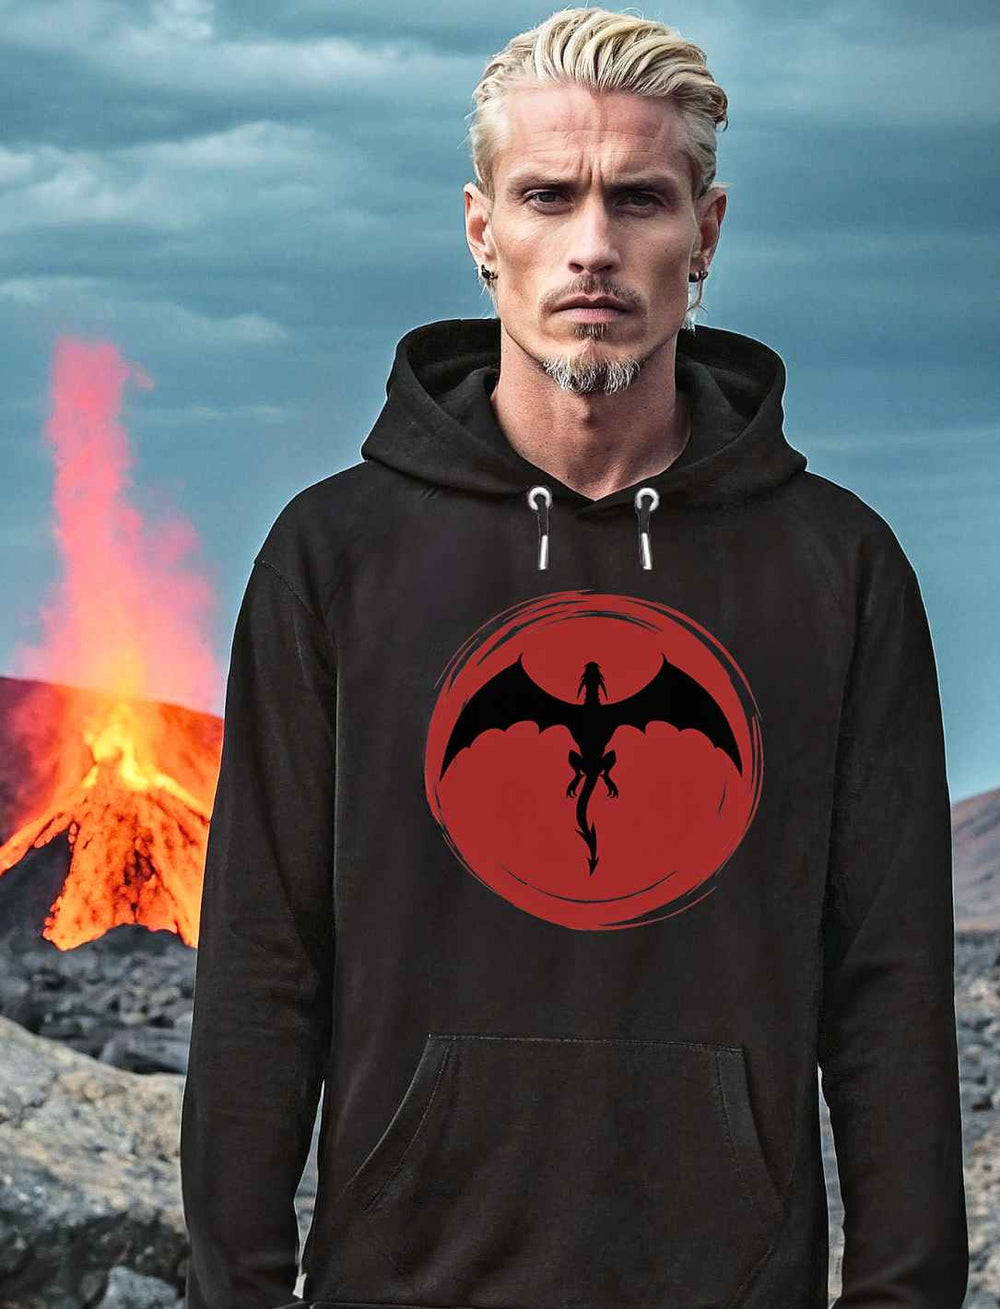 Männliches Model in 'Saga of the Dragon' Unisex Hoodie in Schwarz, steht vor einer dramatischen vulkanischen Landschaft mit einem aktiven Lavastrom im Hintergrund, das symbolische Drachen-Design auf der Brust zur Schau stellend.